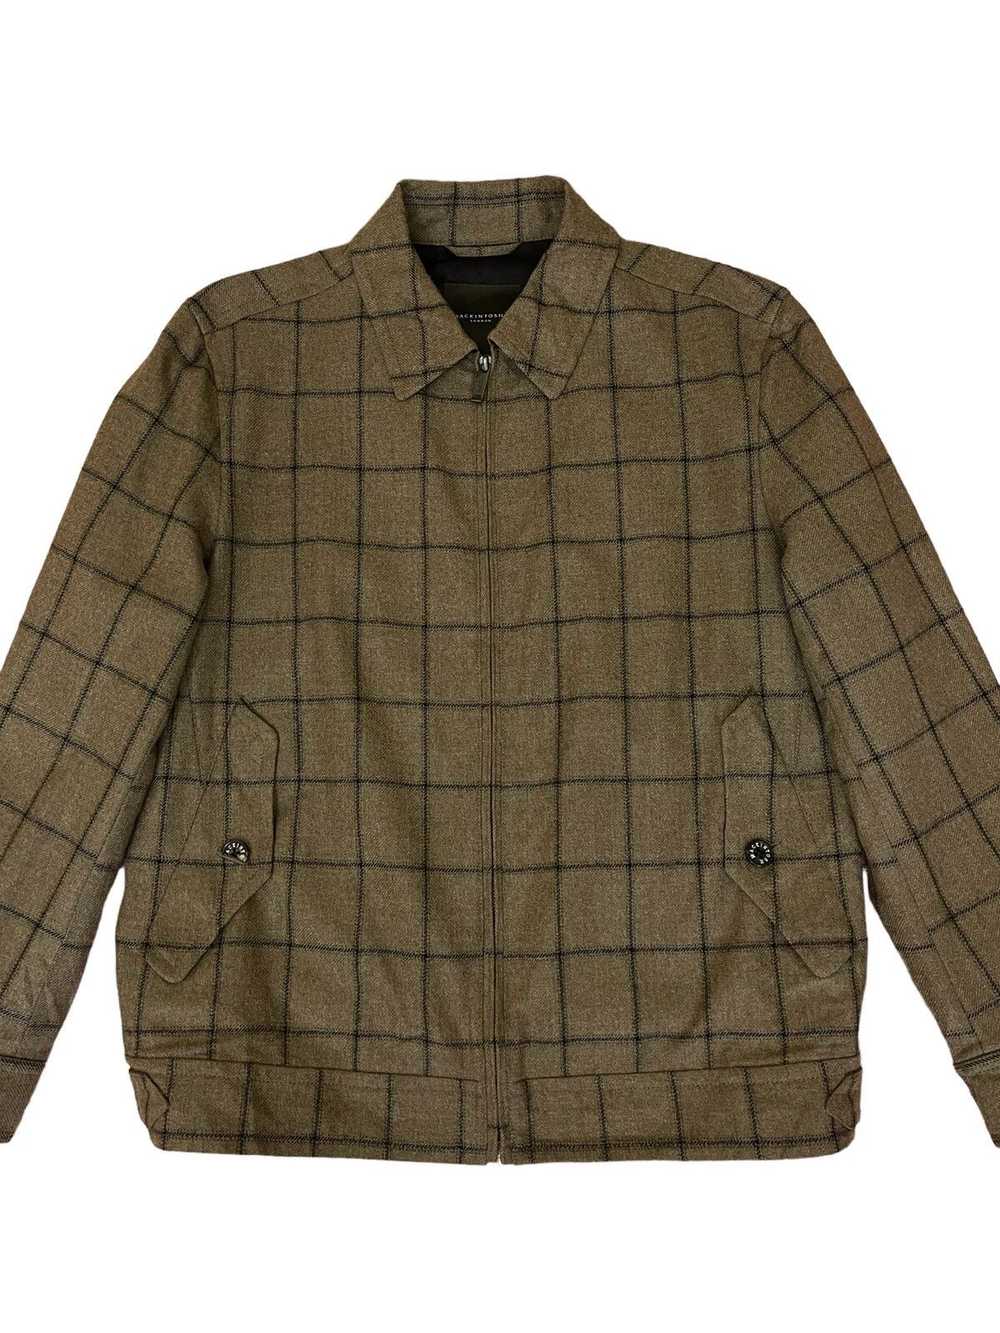 Mackintosh Mackintosh London jacket - image 4